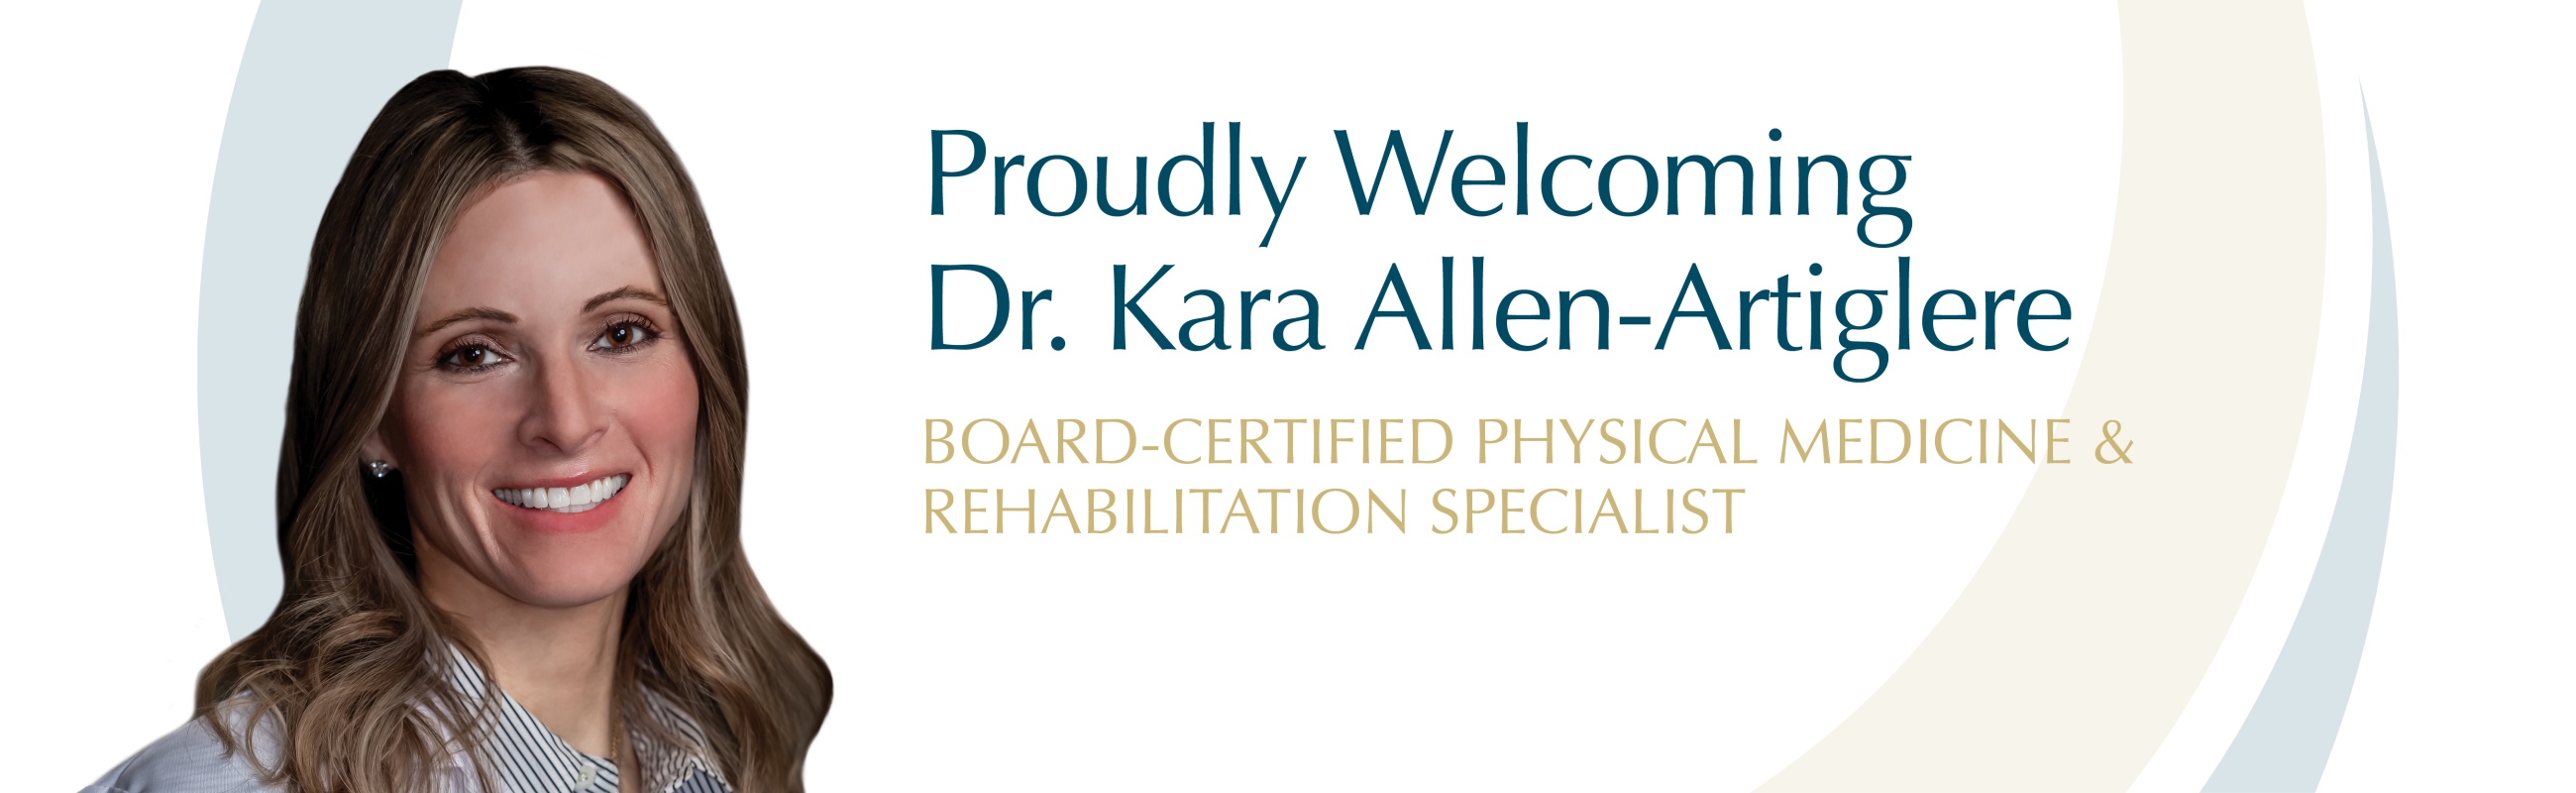 Proudly Welcoming Dr. Kara Allen-Artiglere